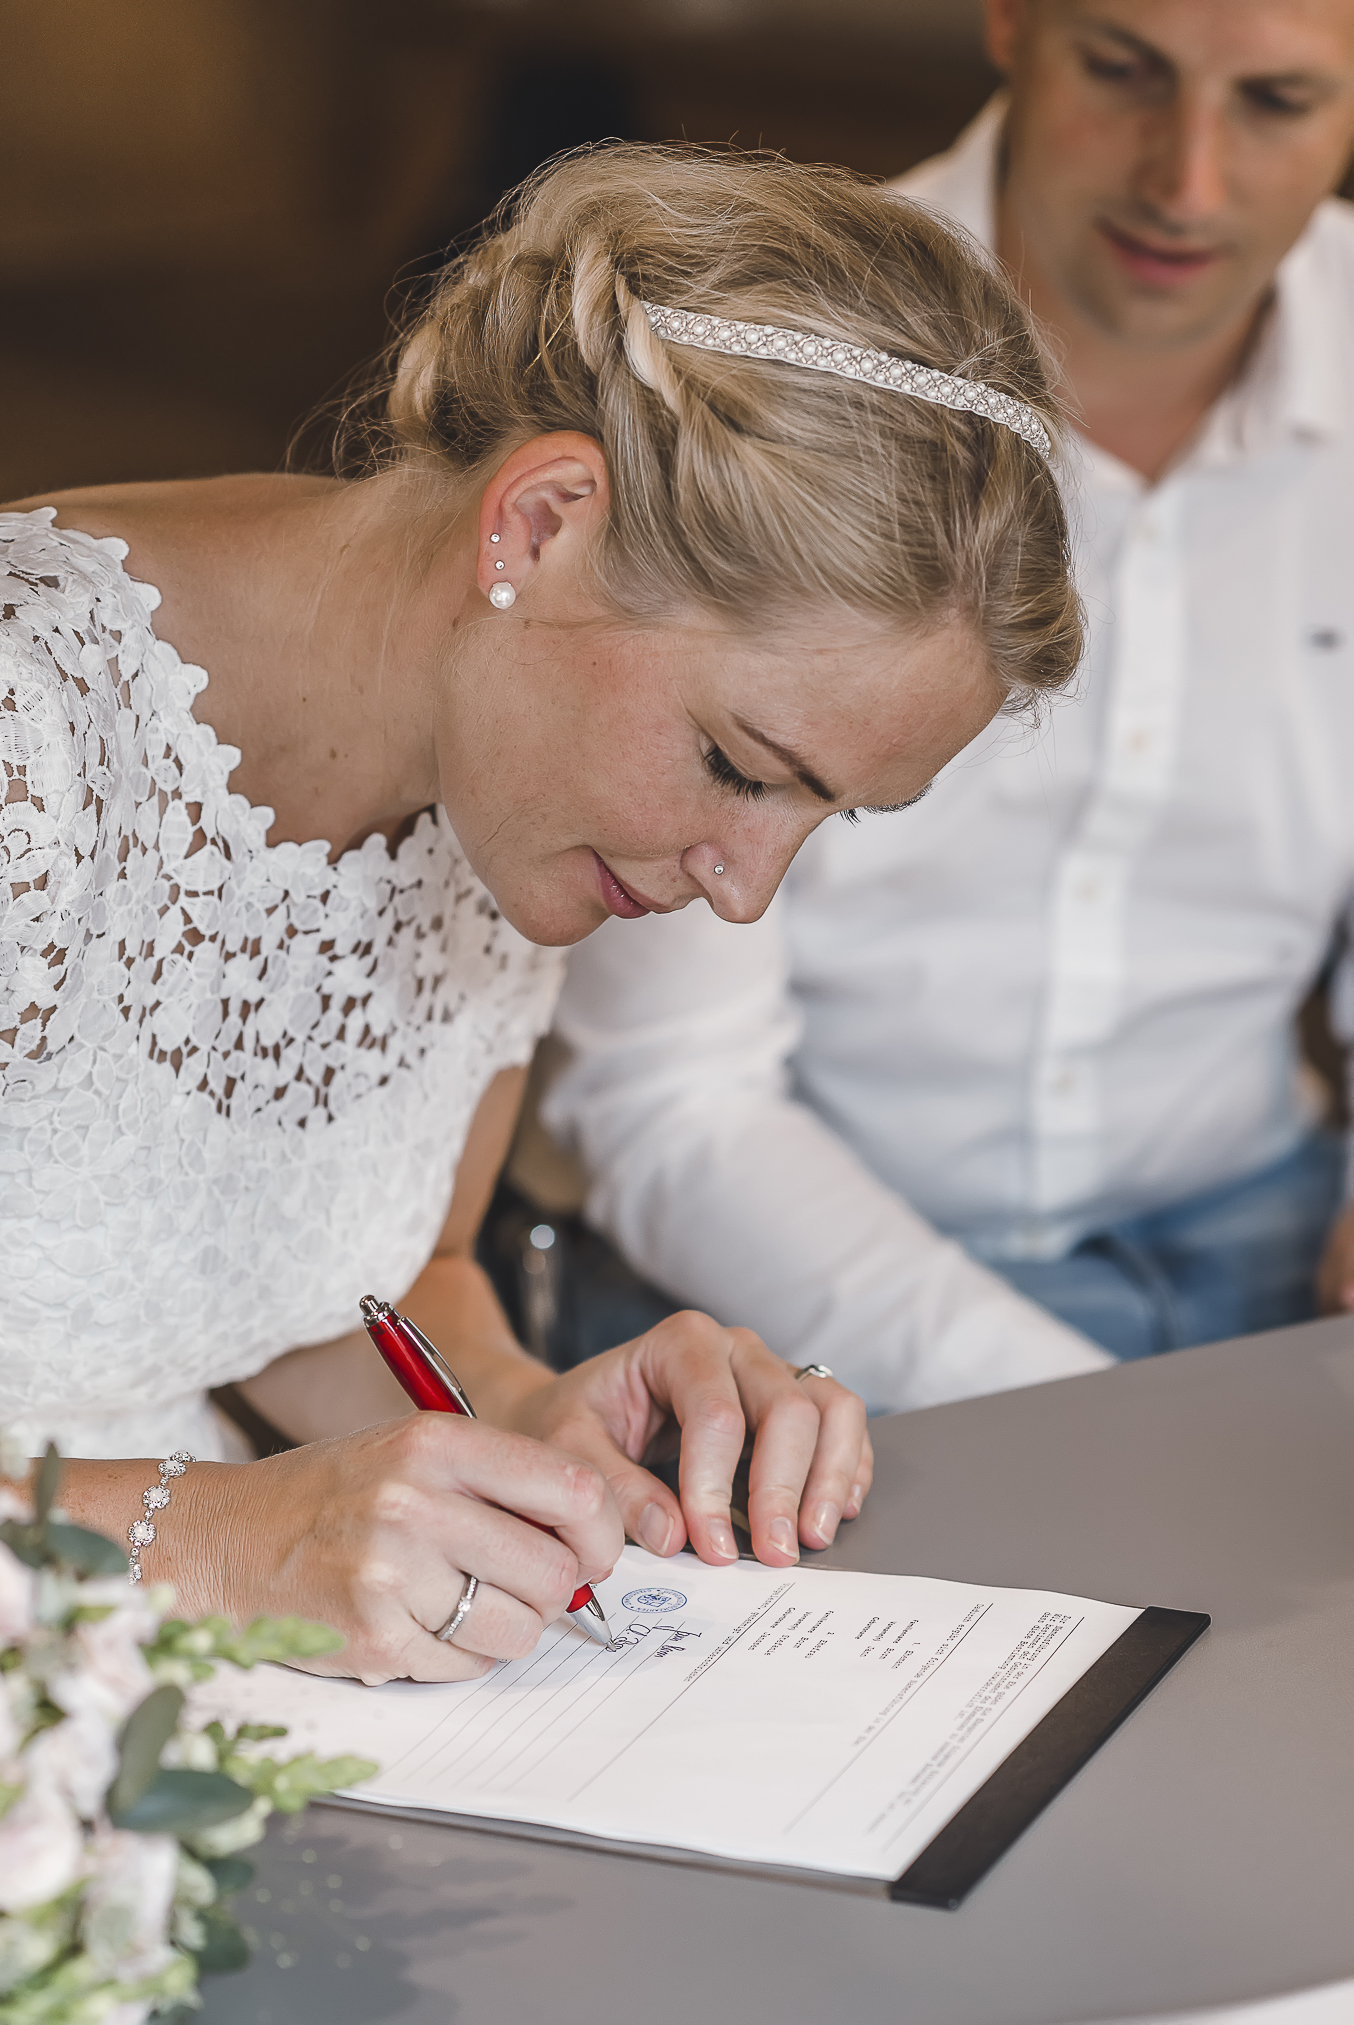 In diesem beeindruckenden Foto wird die emotionale Unterzeichnung der offiziellen standesamtlichen Eheschließung im Schwarzwald eingefangen. Die Braut unterzeichnet das Dokument mit Ernsthaftigkeit und Konzentration, während der Bräutigam sie voller Liebe und Bewunderung ansieht. Die Fotografin Isabela Campos fängt die Stimmung und das Gefühl dieses besonderen Augenblicks perfekt ein.